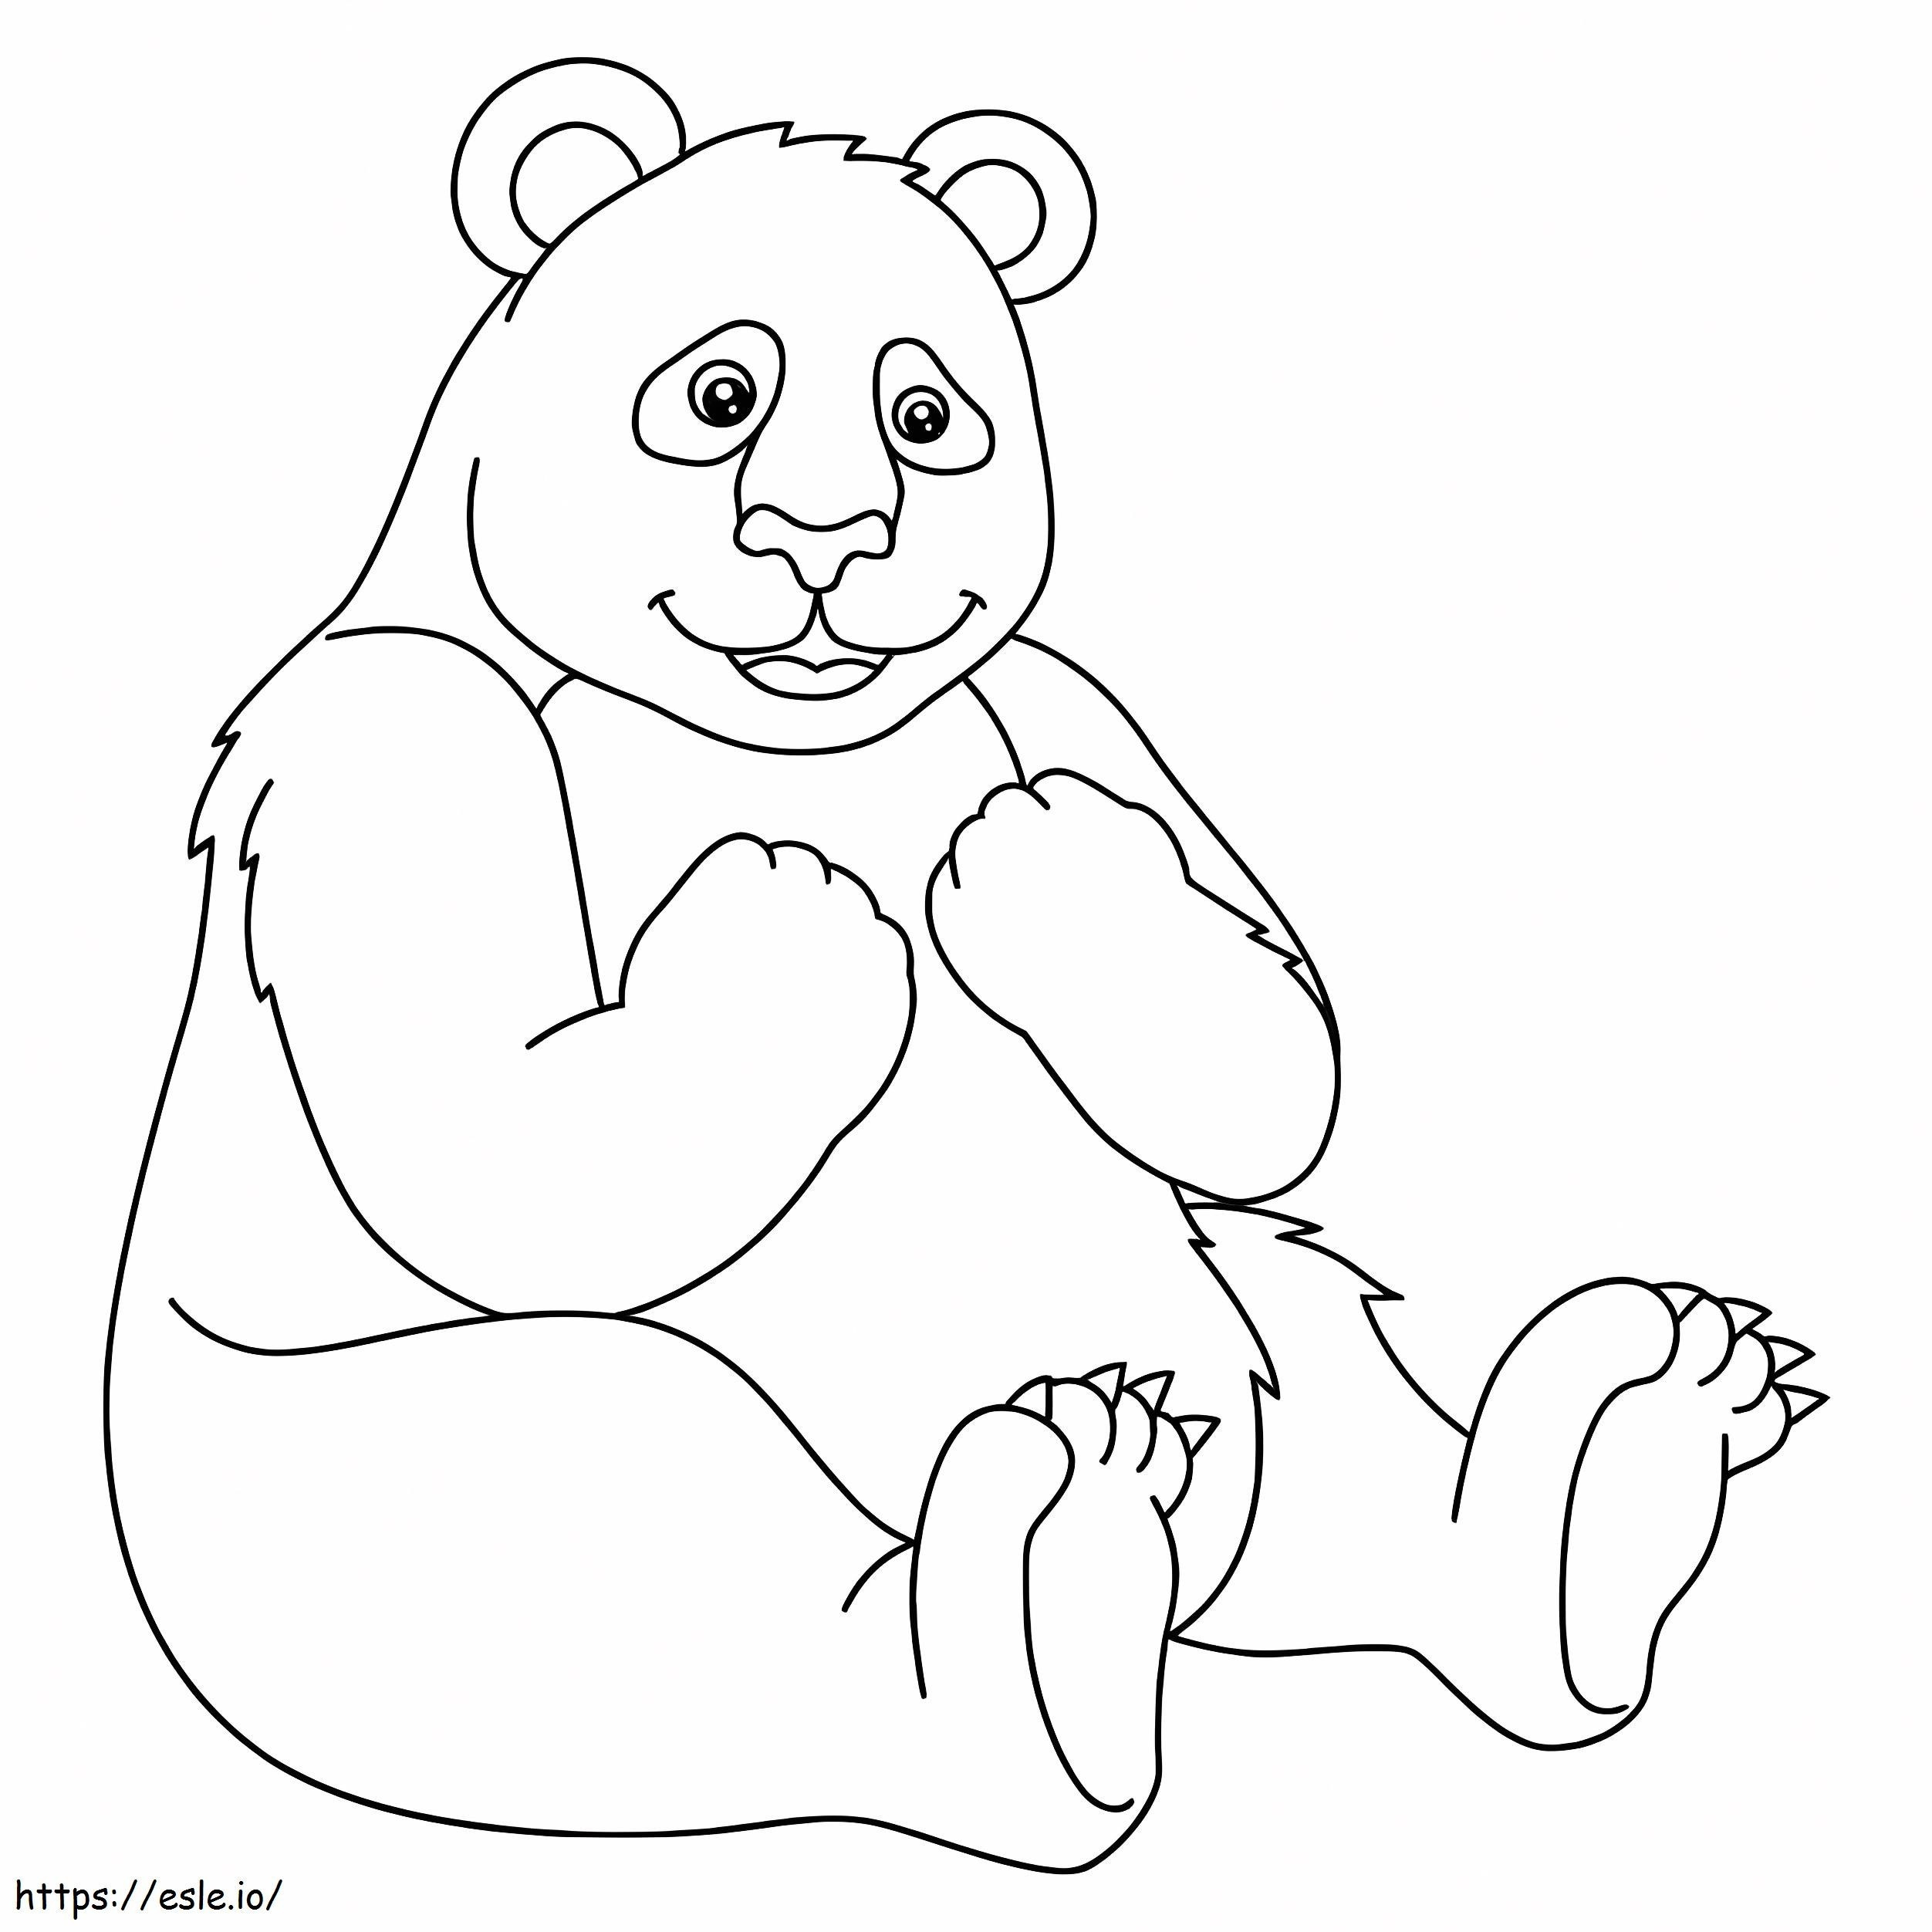 Coloriage Gros panda assis à imprimer dessin